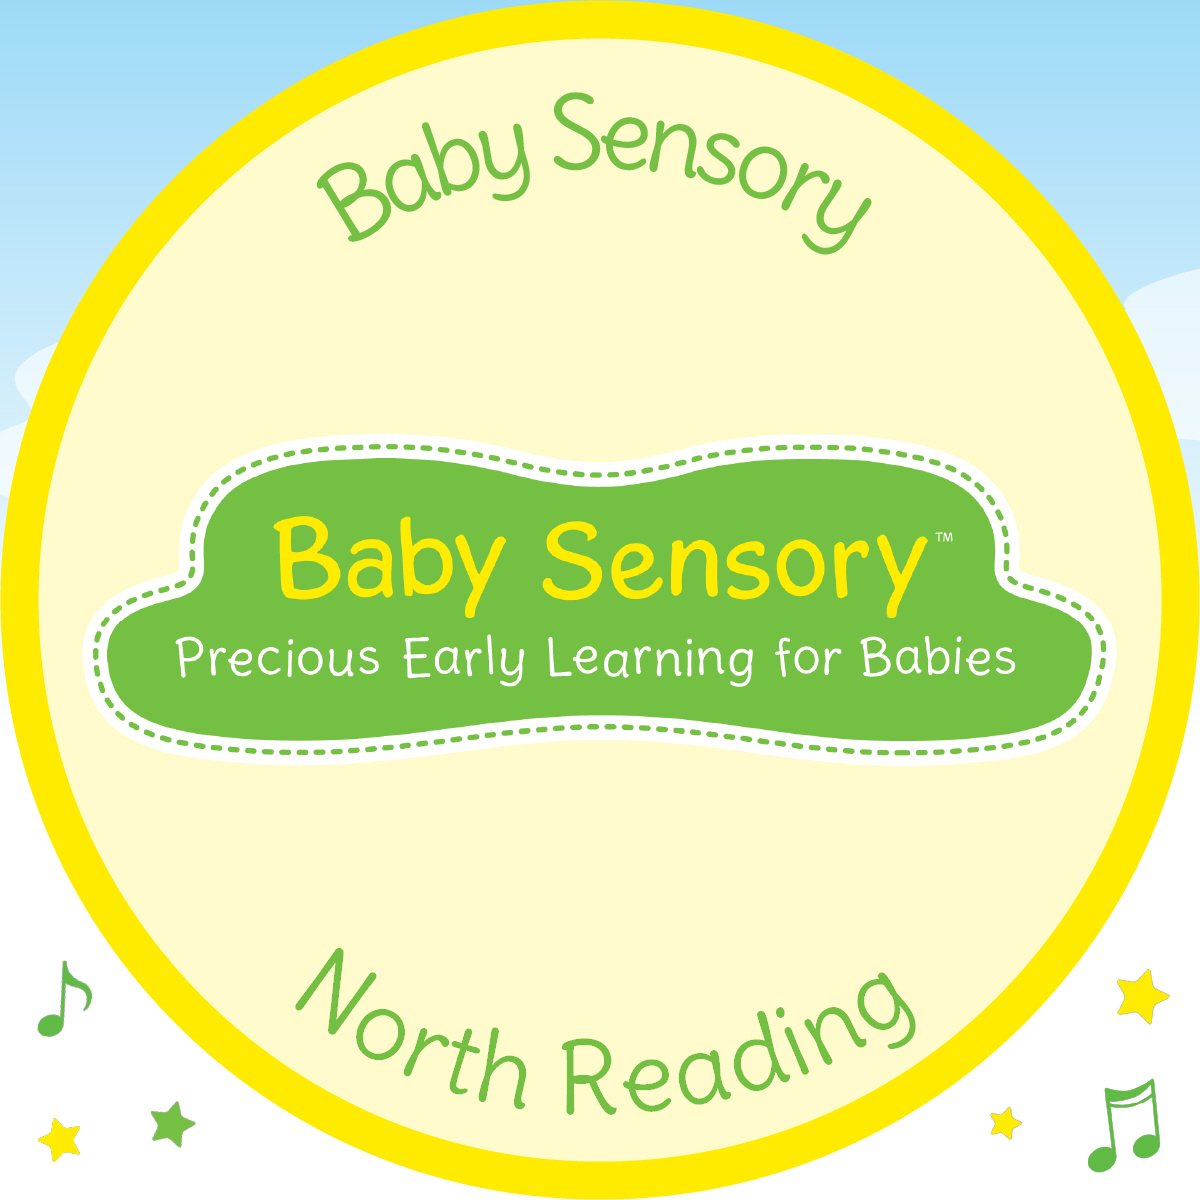 Baby Sensory North Reading's logo